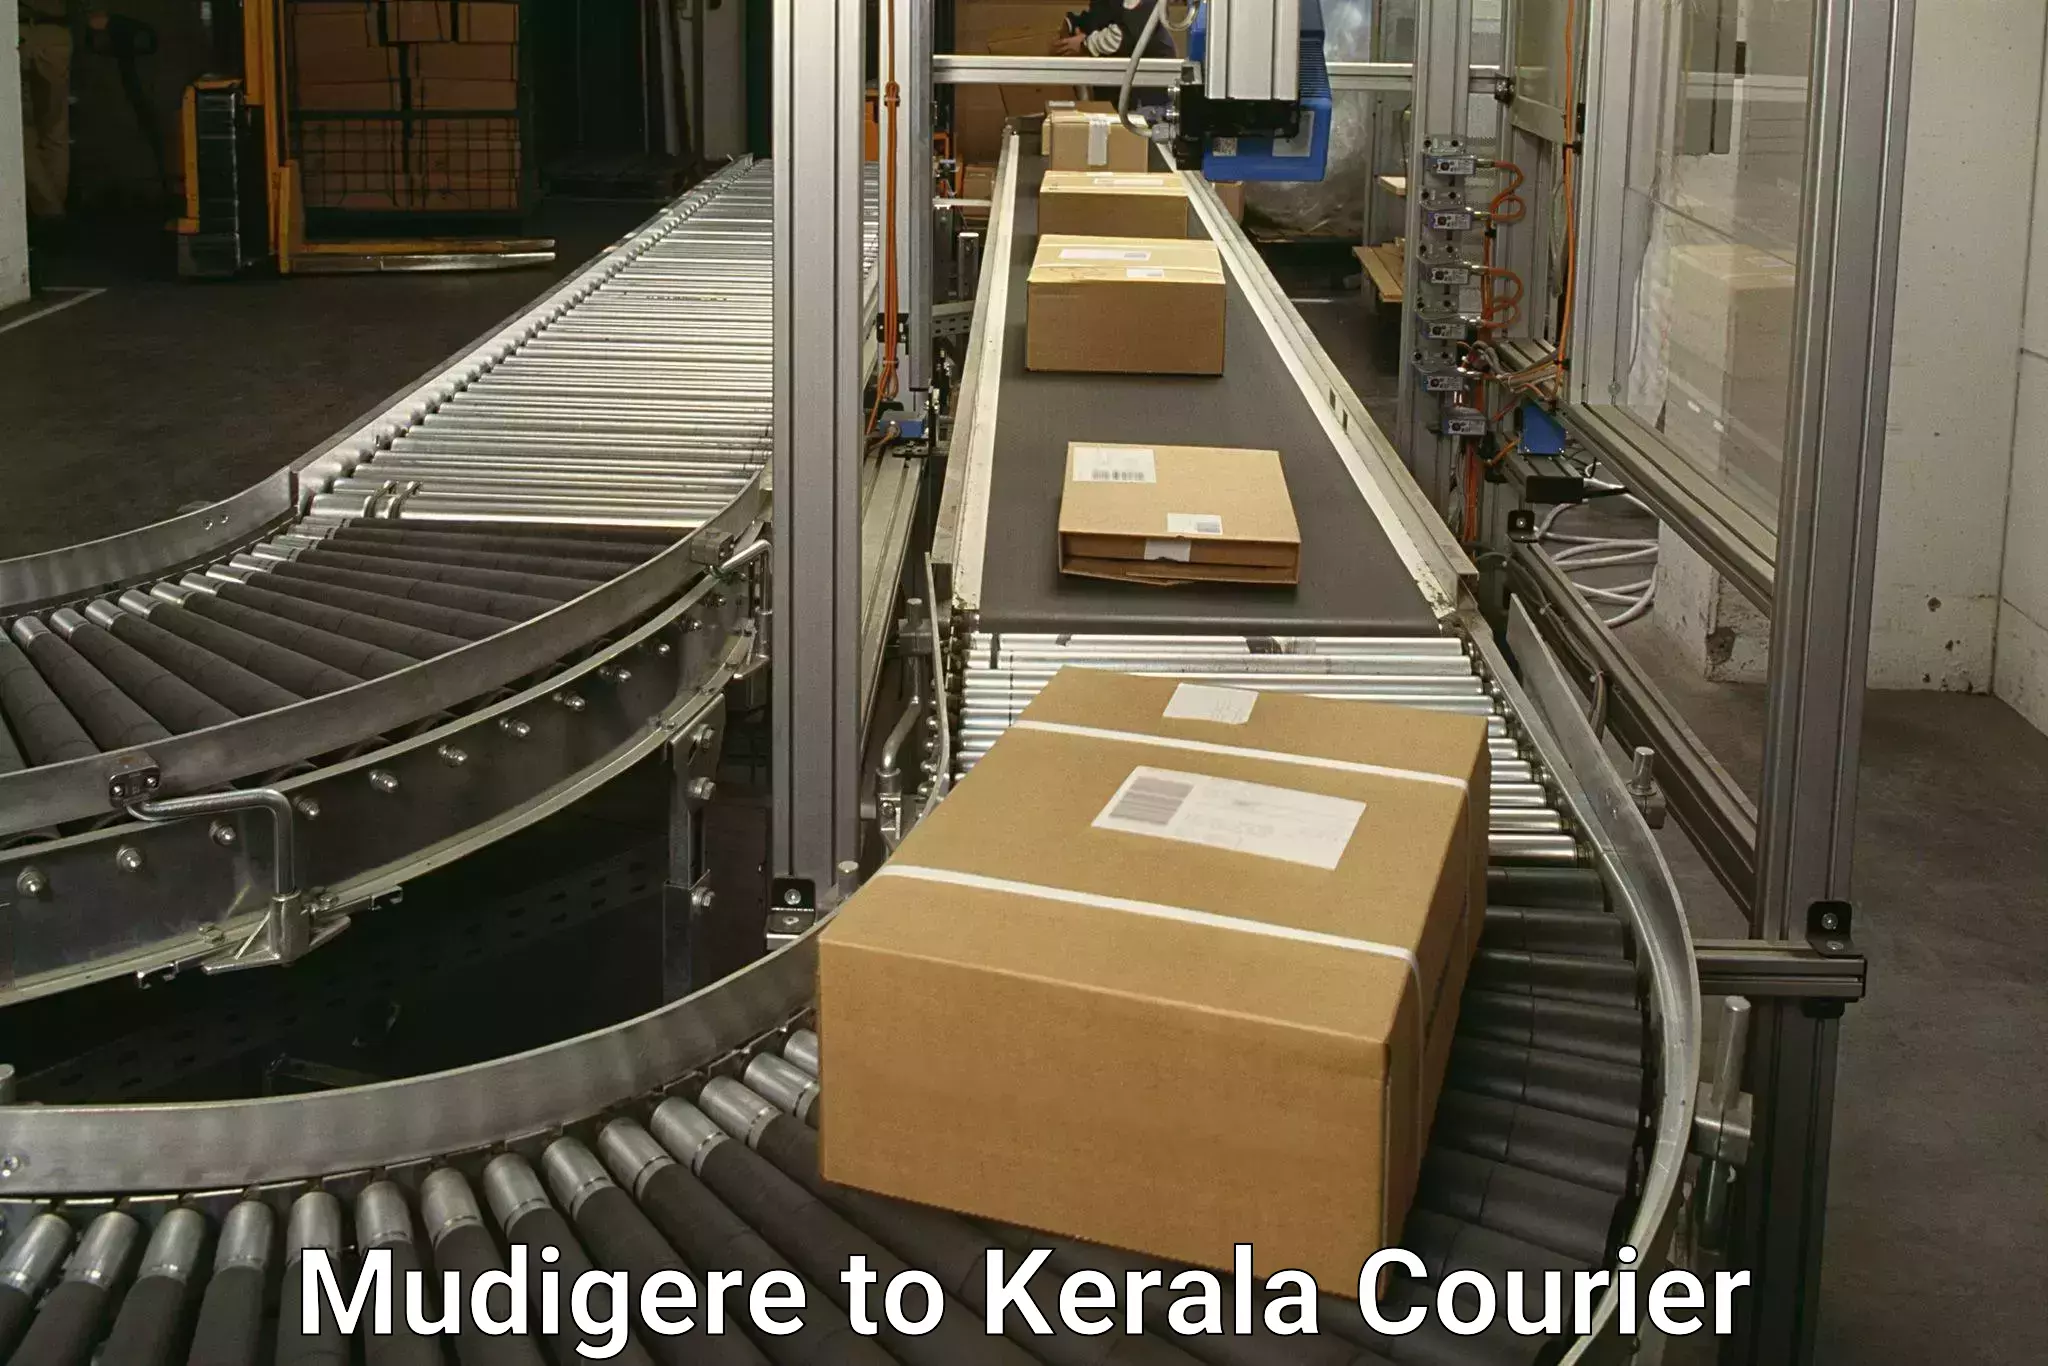 Holiday shipping services Mudigere to Kerala